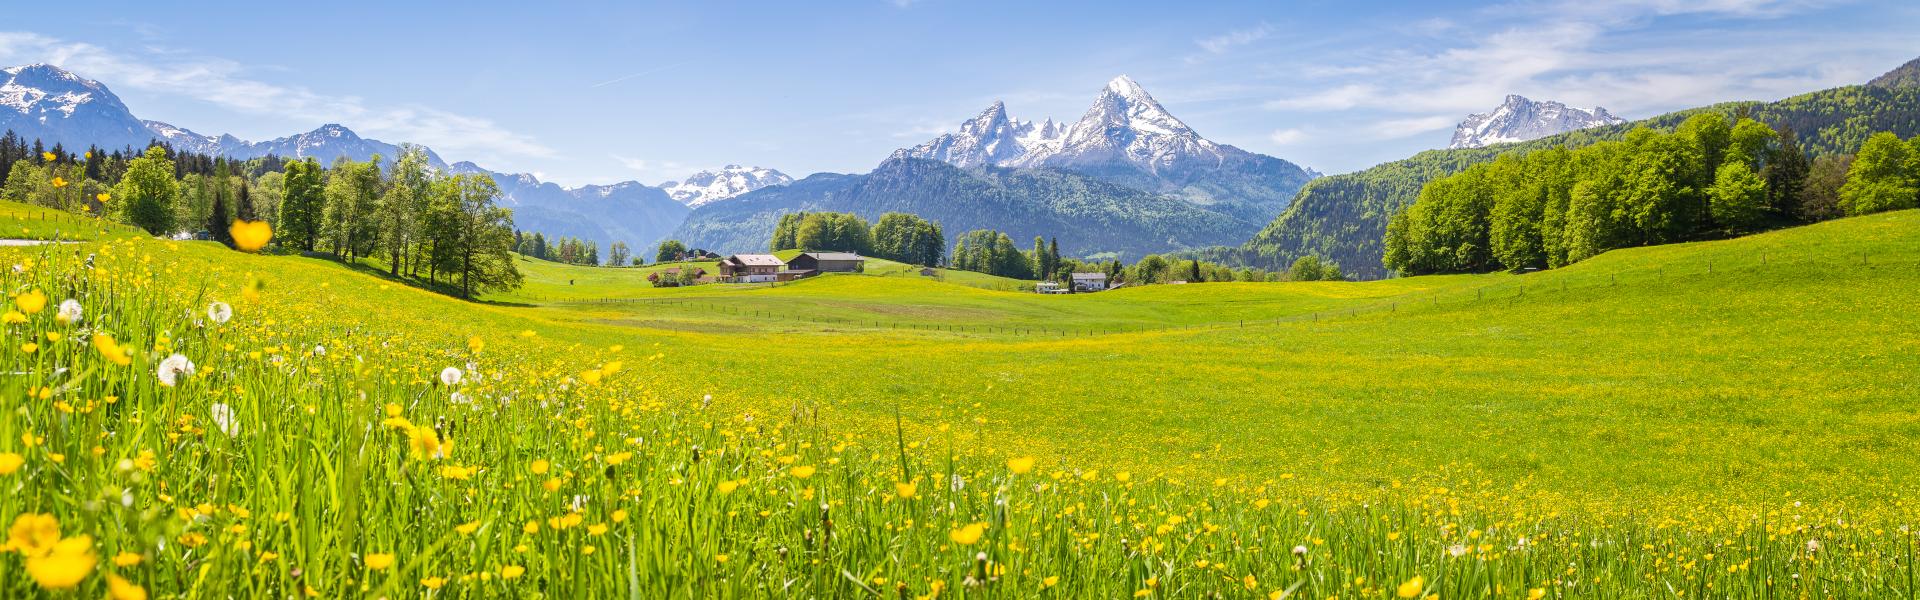 Ferienwohnungen & Ferienhäuser für Urlaub in der Alpenregion Tegernsee Schliersee - Casamundo